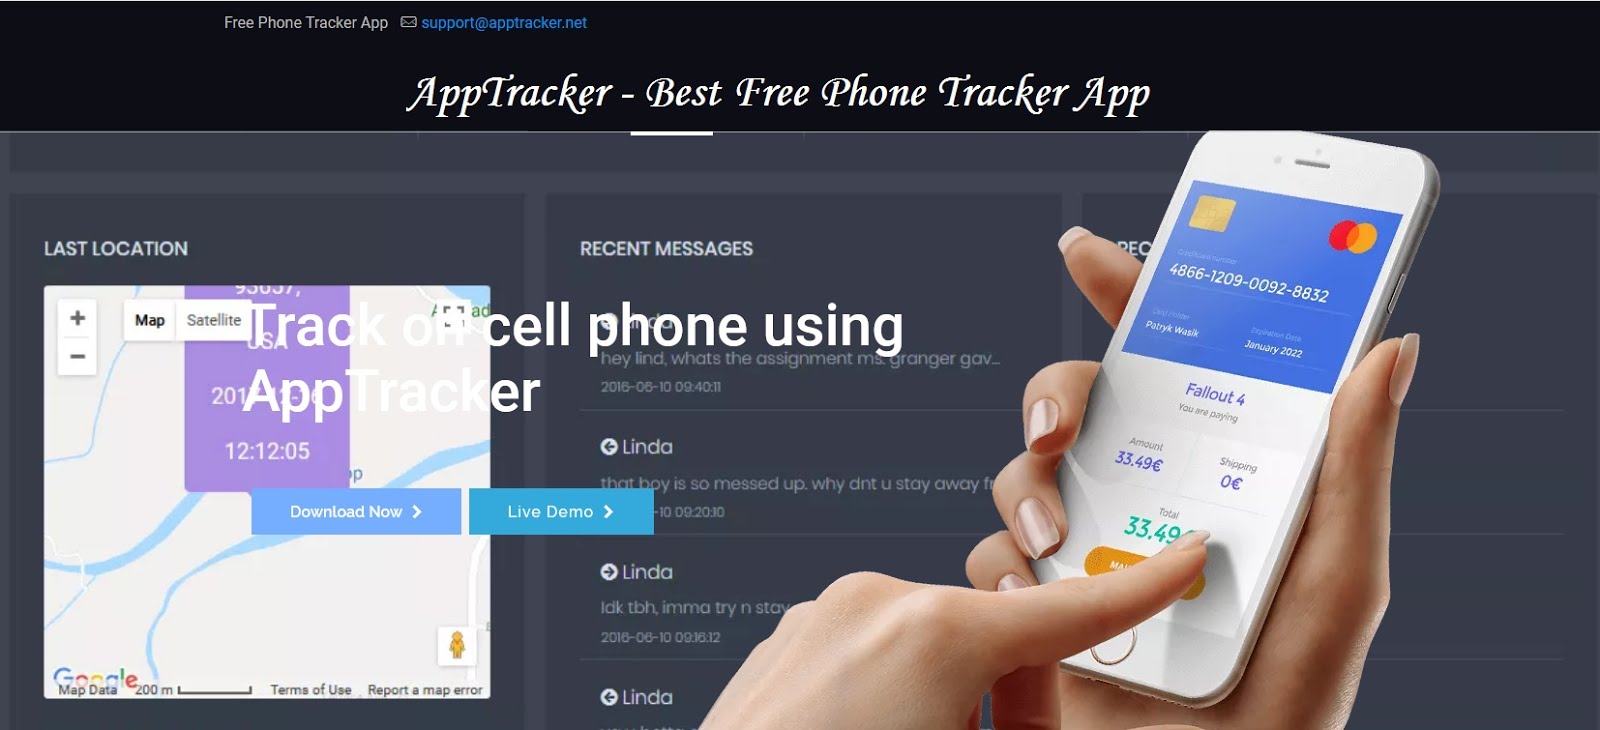 App Tracker Ltd